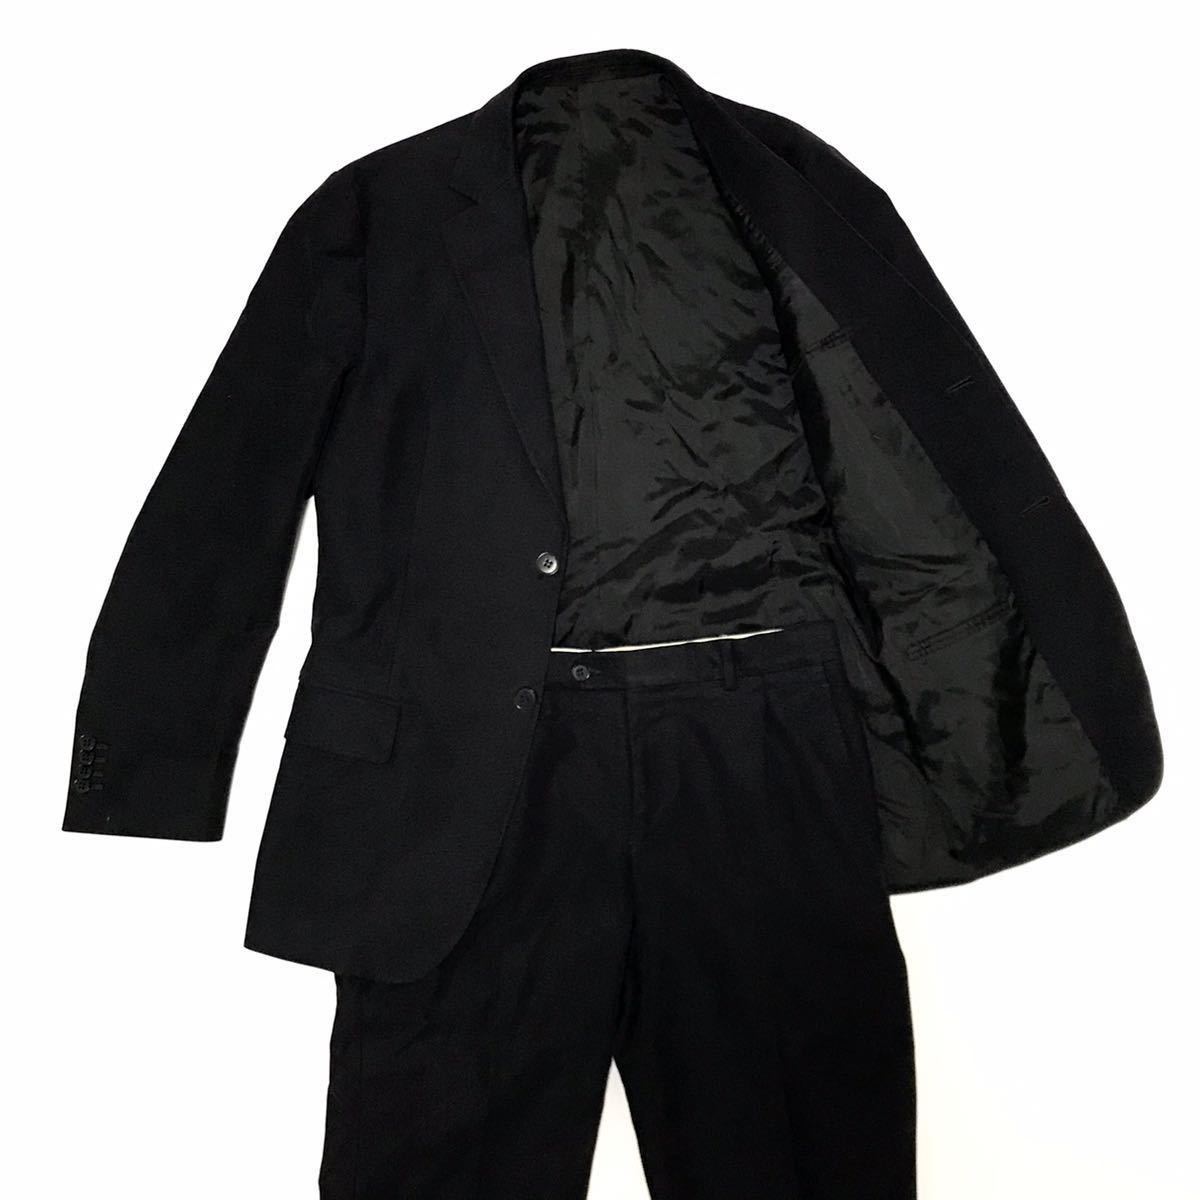 【ジーゼニア】本物 Z zegna スーツ セットアップ サイズ46C ジャケット スラックス 綿100% 男性用 メンズ